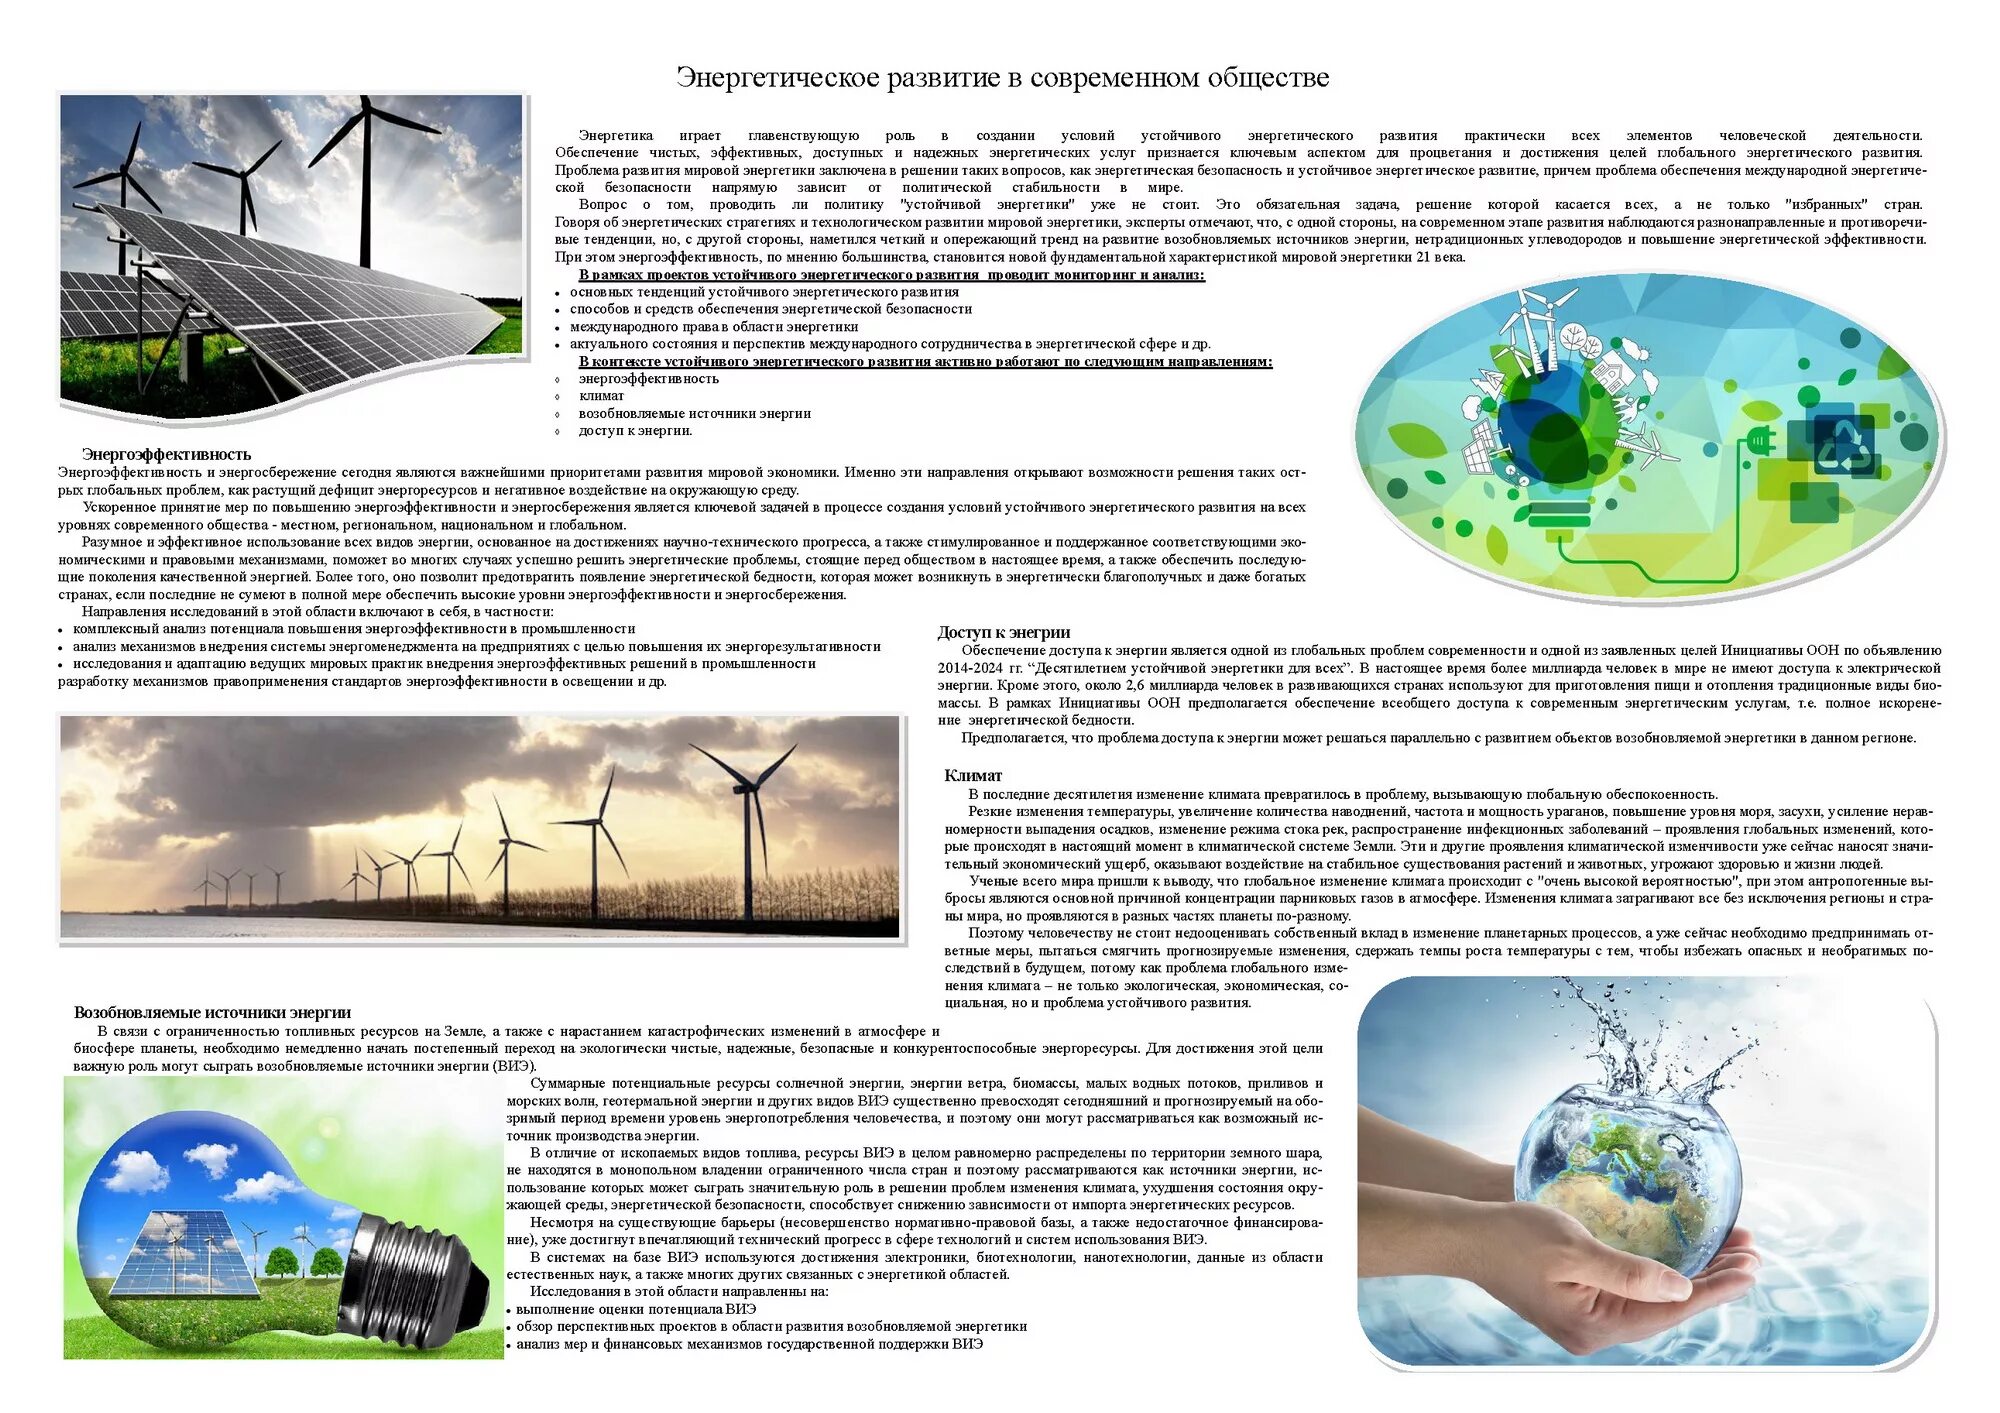 Источники энергии. Альтернативные источники энергии. Проблемы развития возобновляемых источников энергии. Устойчивое развитие энергетики.